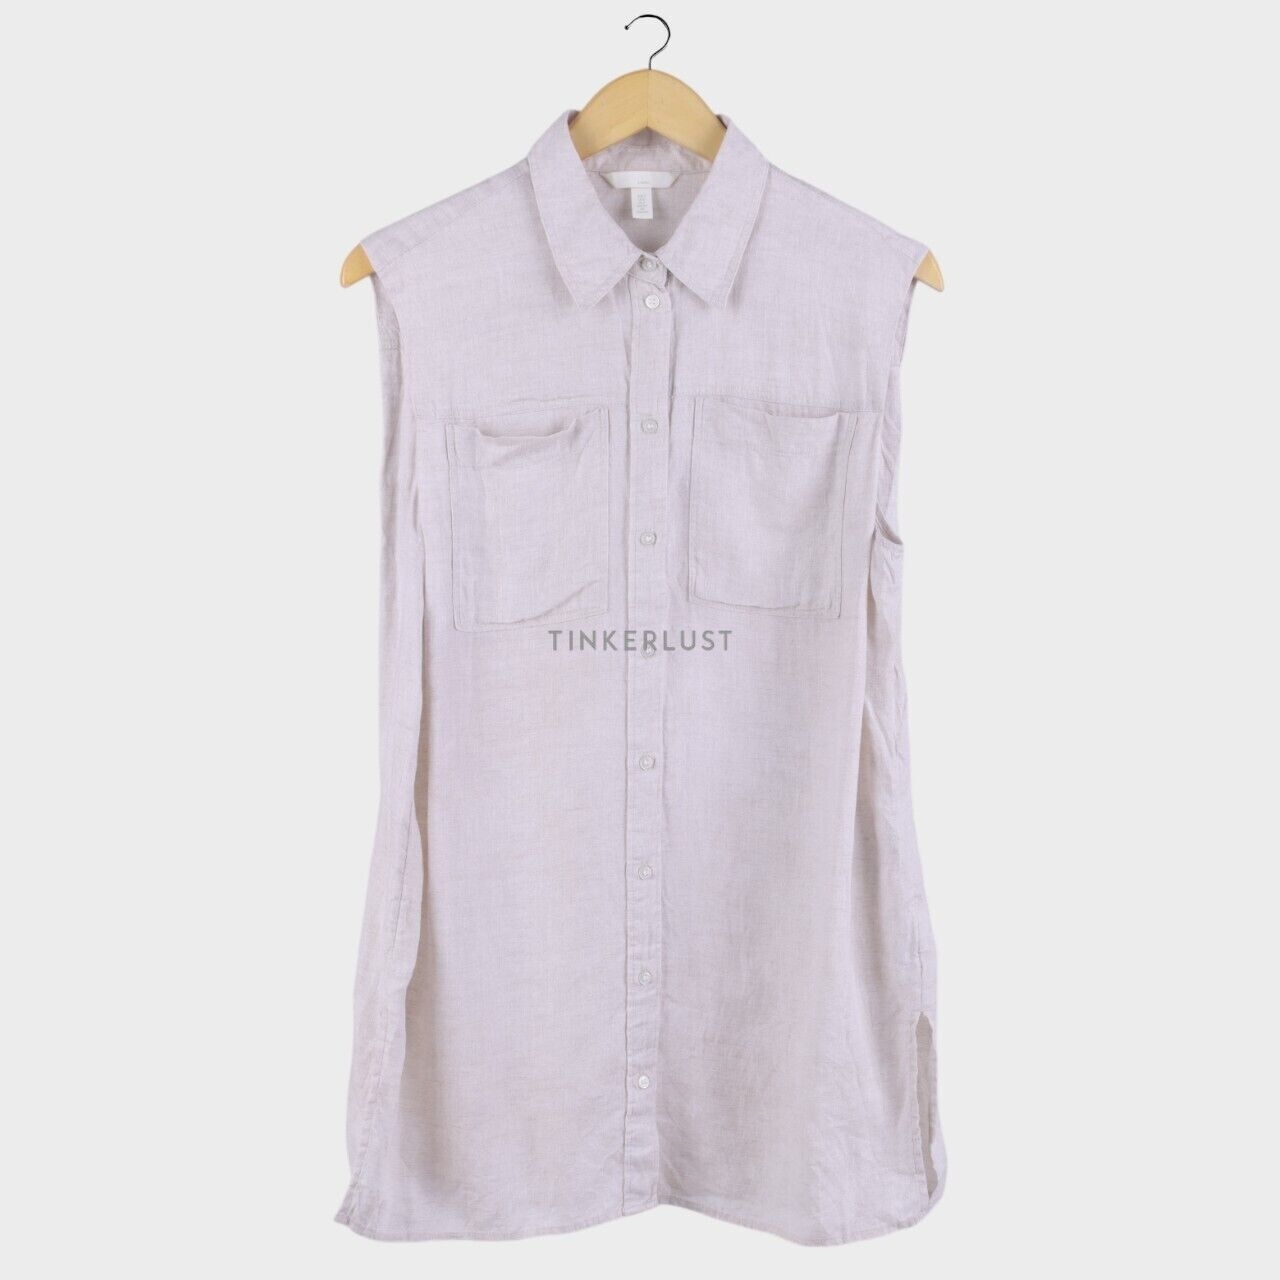 H&M Light Beige Shirt Sleeveless